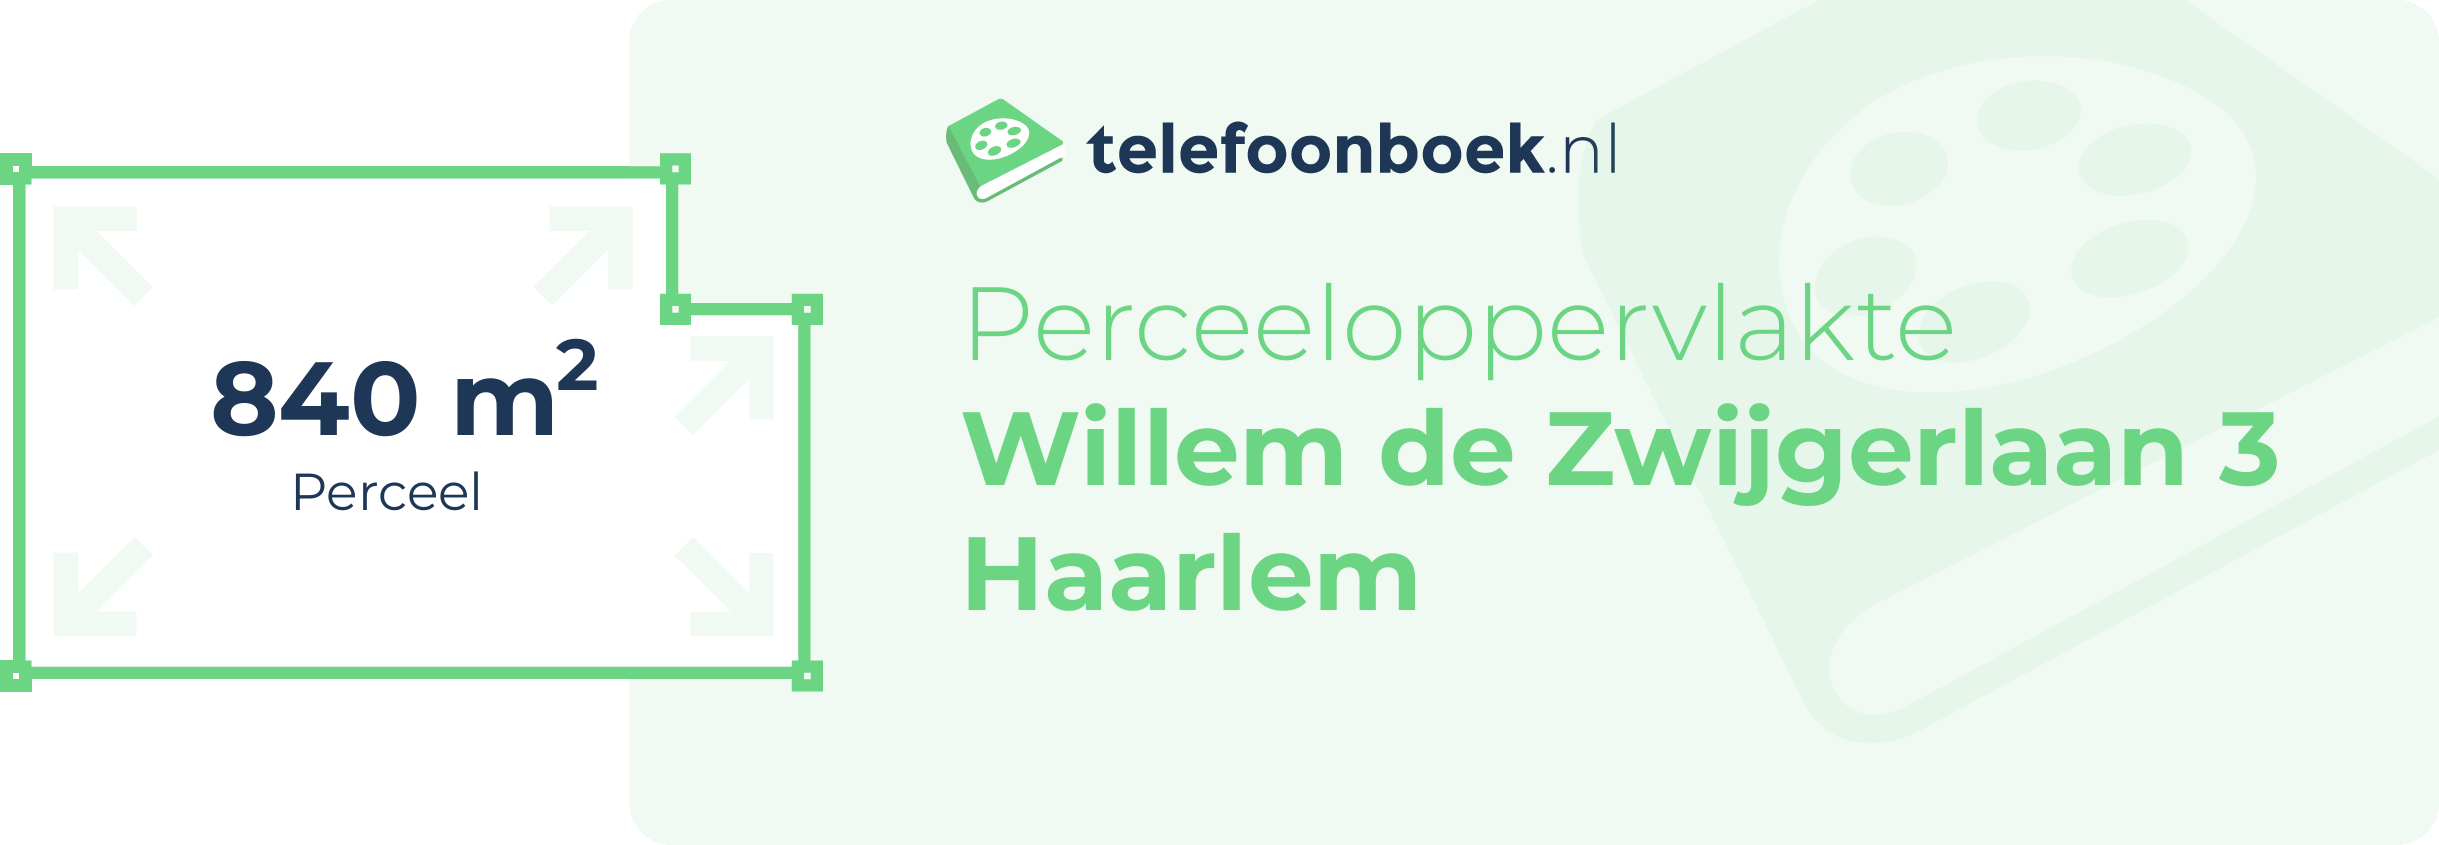 Perceeloppervlakte Willem De Zwijgerlaan 3 Haarlem